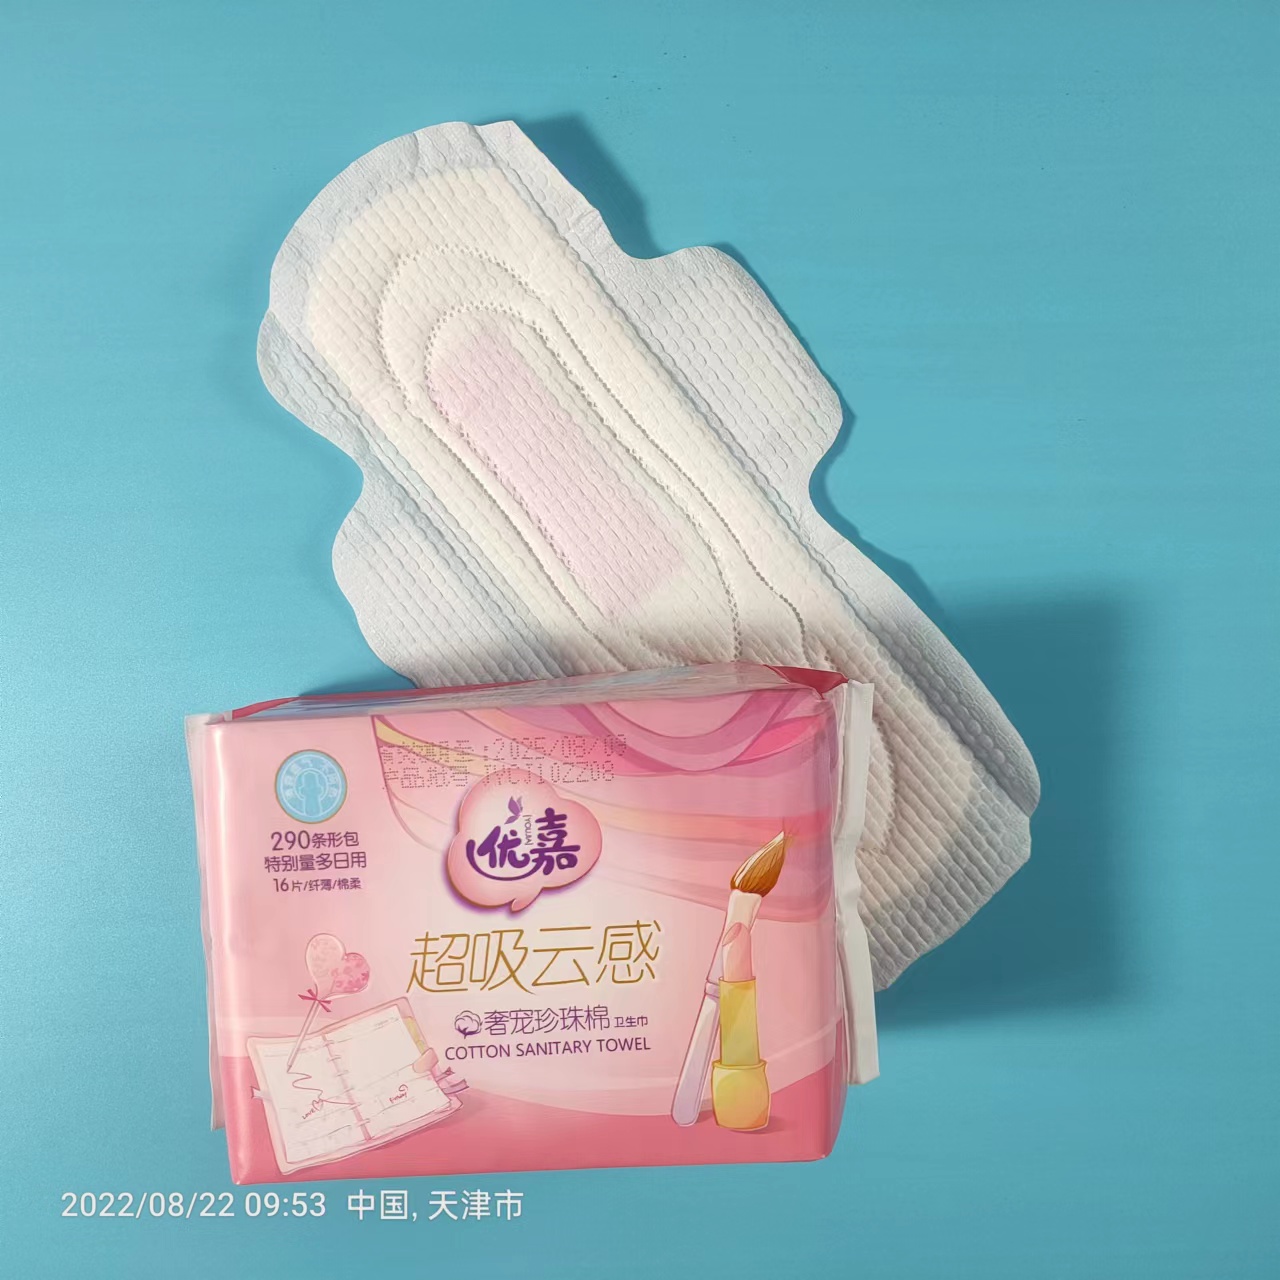 Podpaska okresowa dla kobiet Produkt Biodegradowalne Chiny Hurtownia anionowych podpasek higienicznych